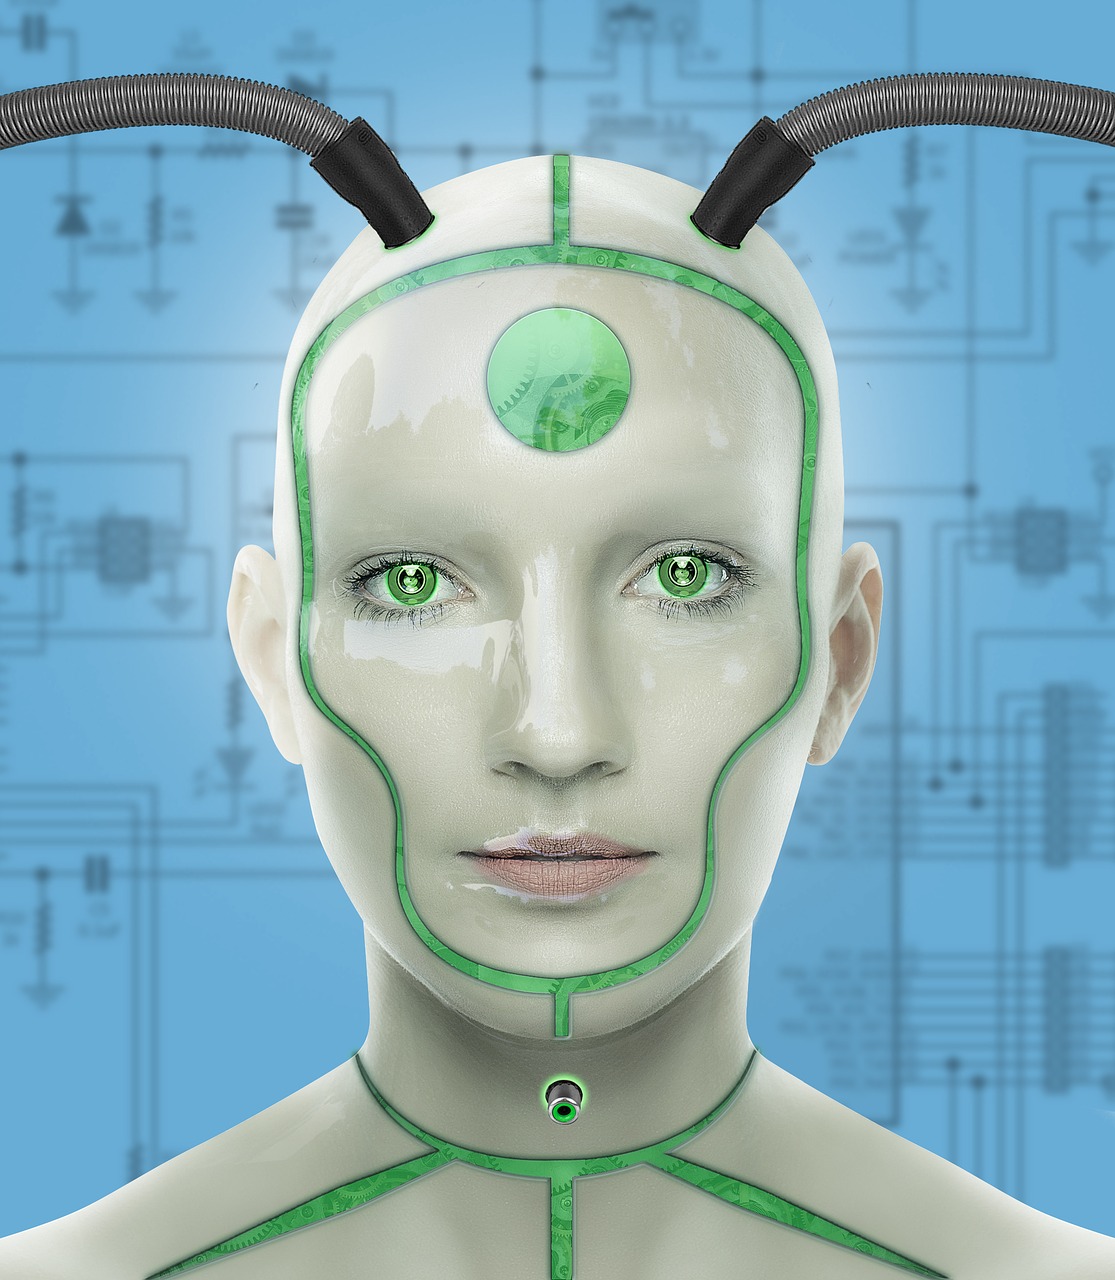 Kiborgas,  Moteris,  Futuristinis,  Cyber,  Technologijos,  Dirbtinis,  Sci-Fi,  Virtualus,  Technologijų,  Robotas